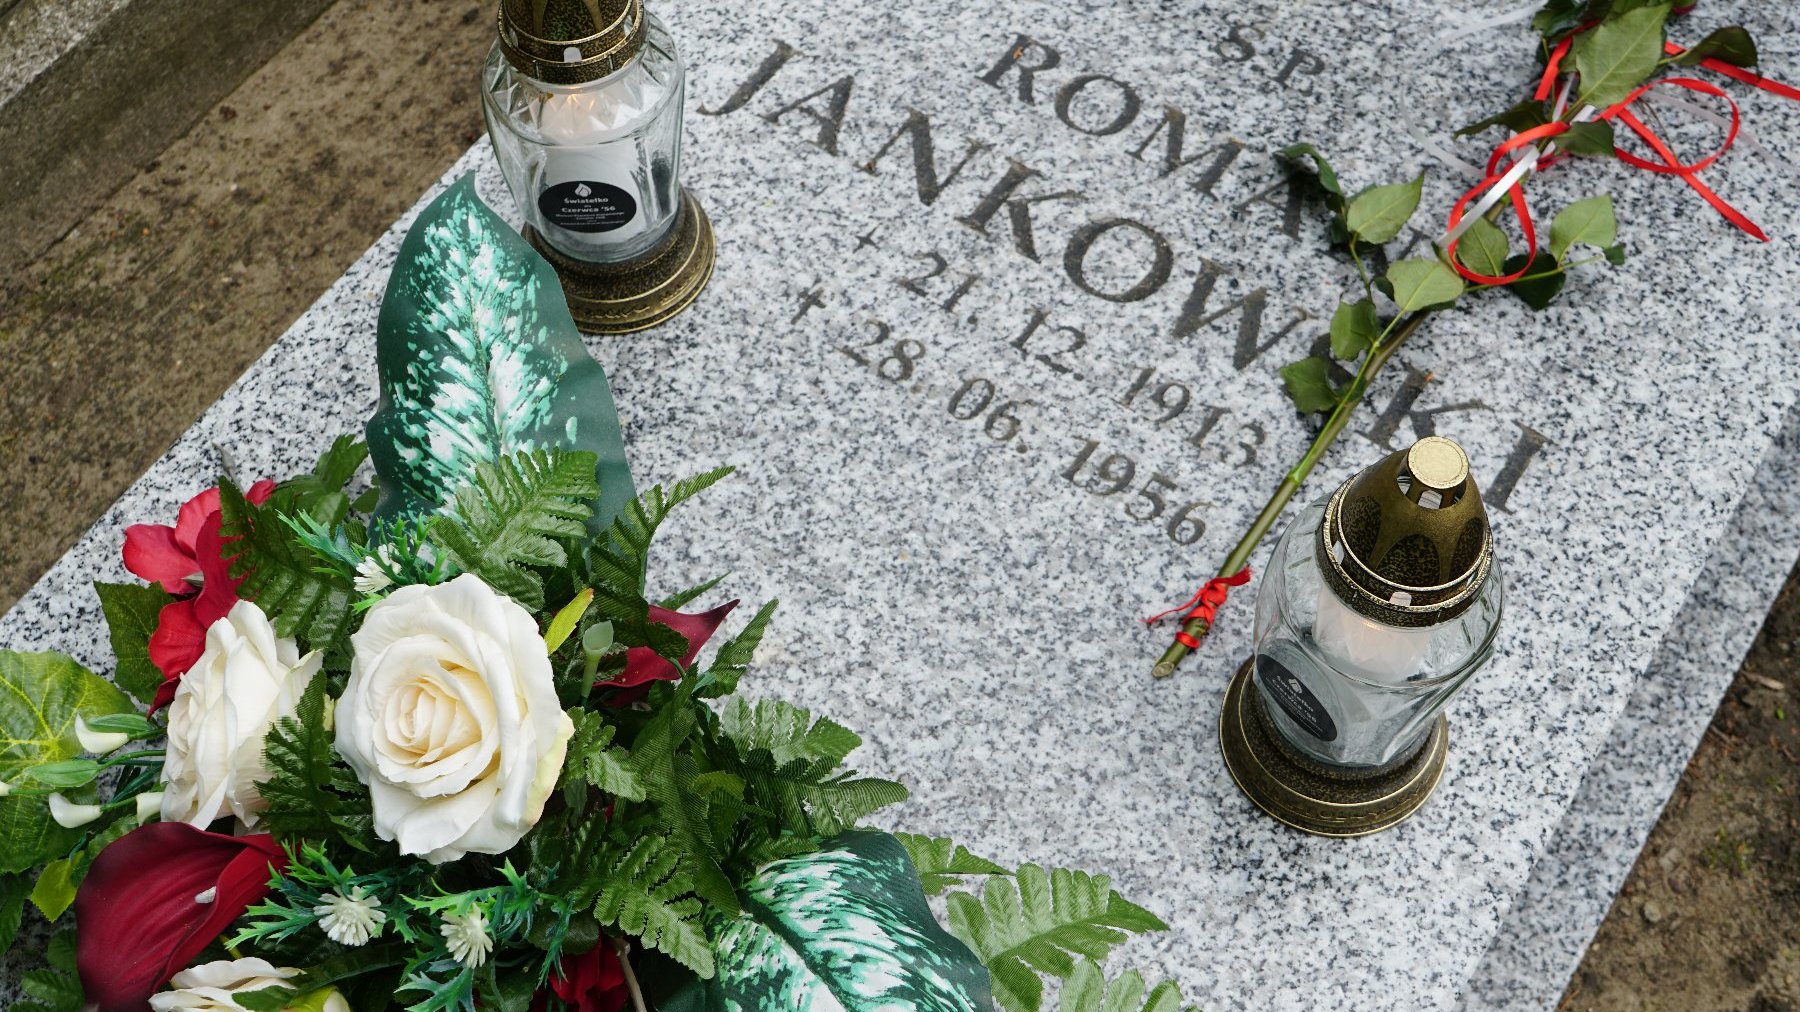 Zdjęcie przedstawia grób, na którym leżą kwiaty i znicze.